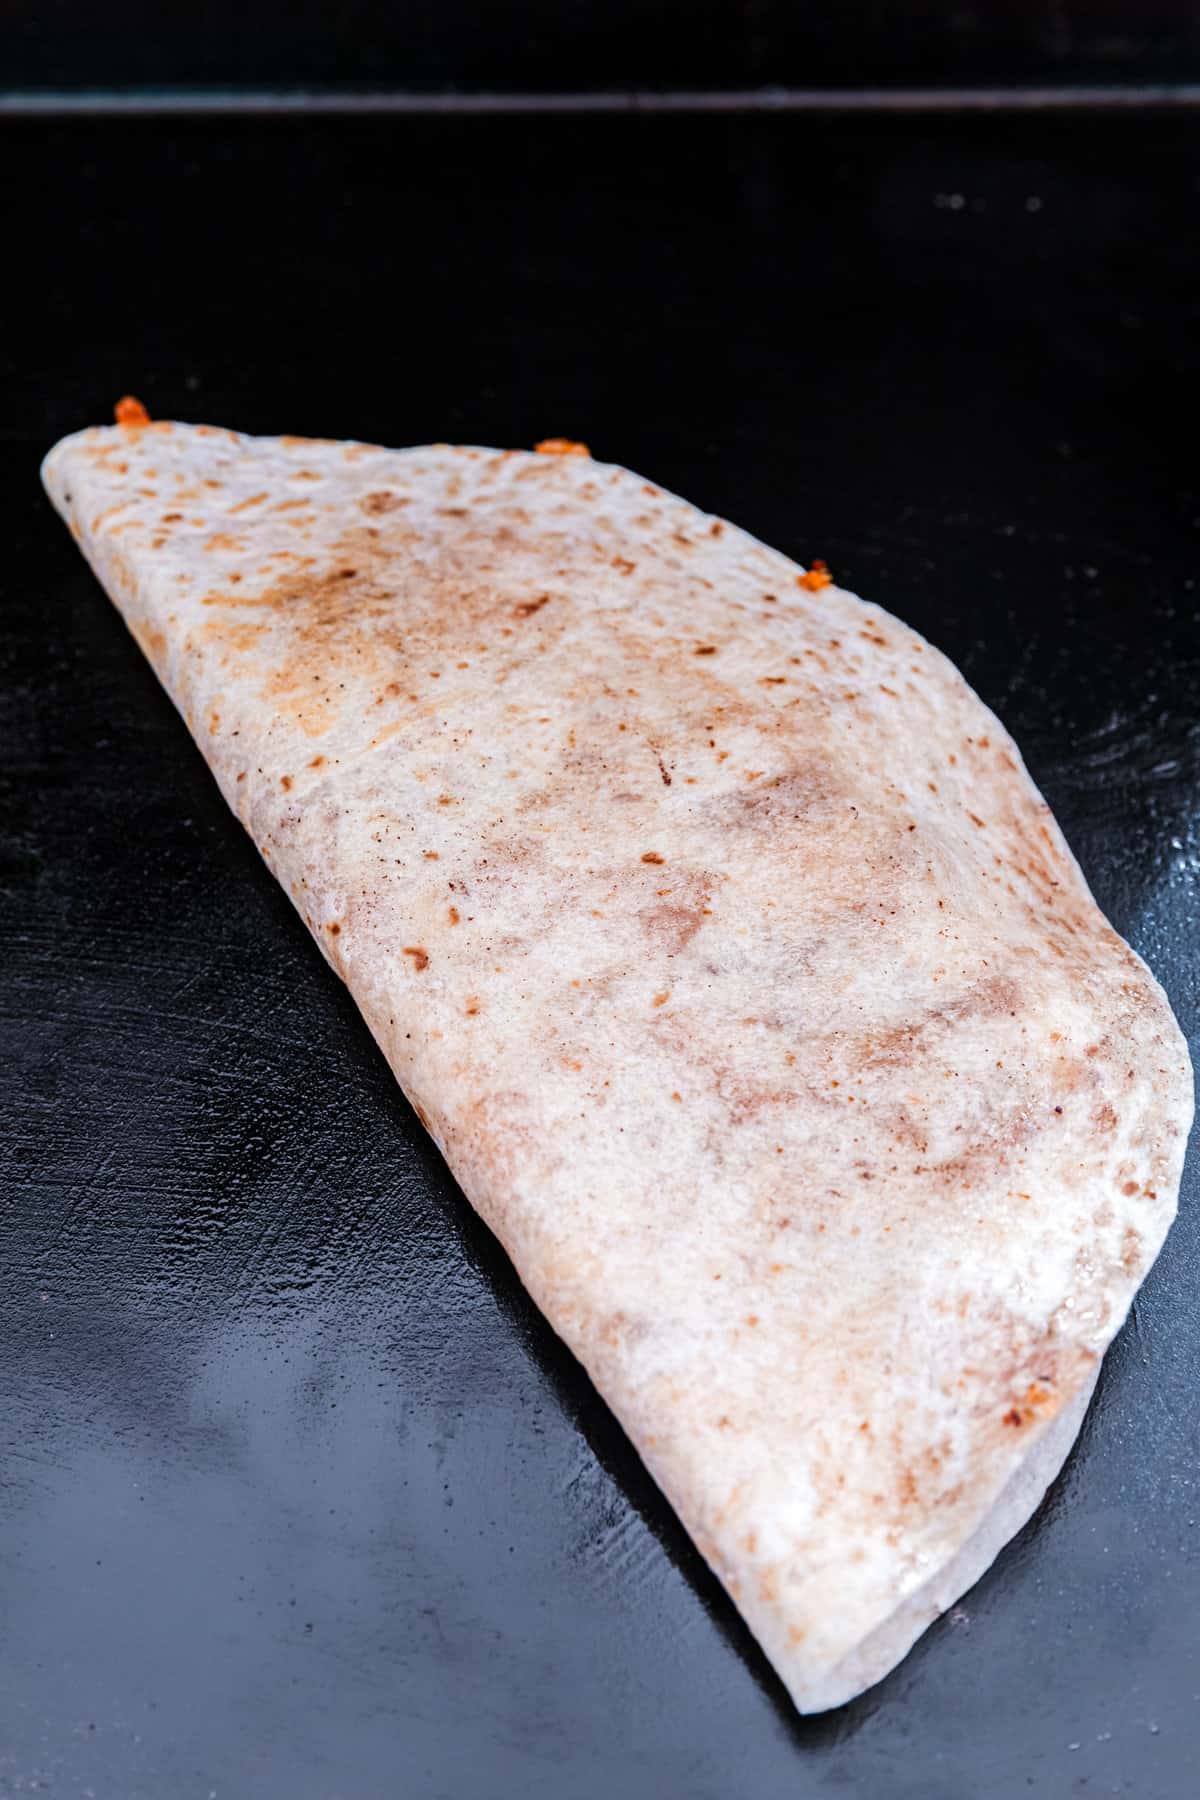 Folding burrito sized torilla in half while still on the griddle for Blackstone Chicken Quesadilla